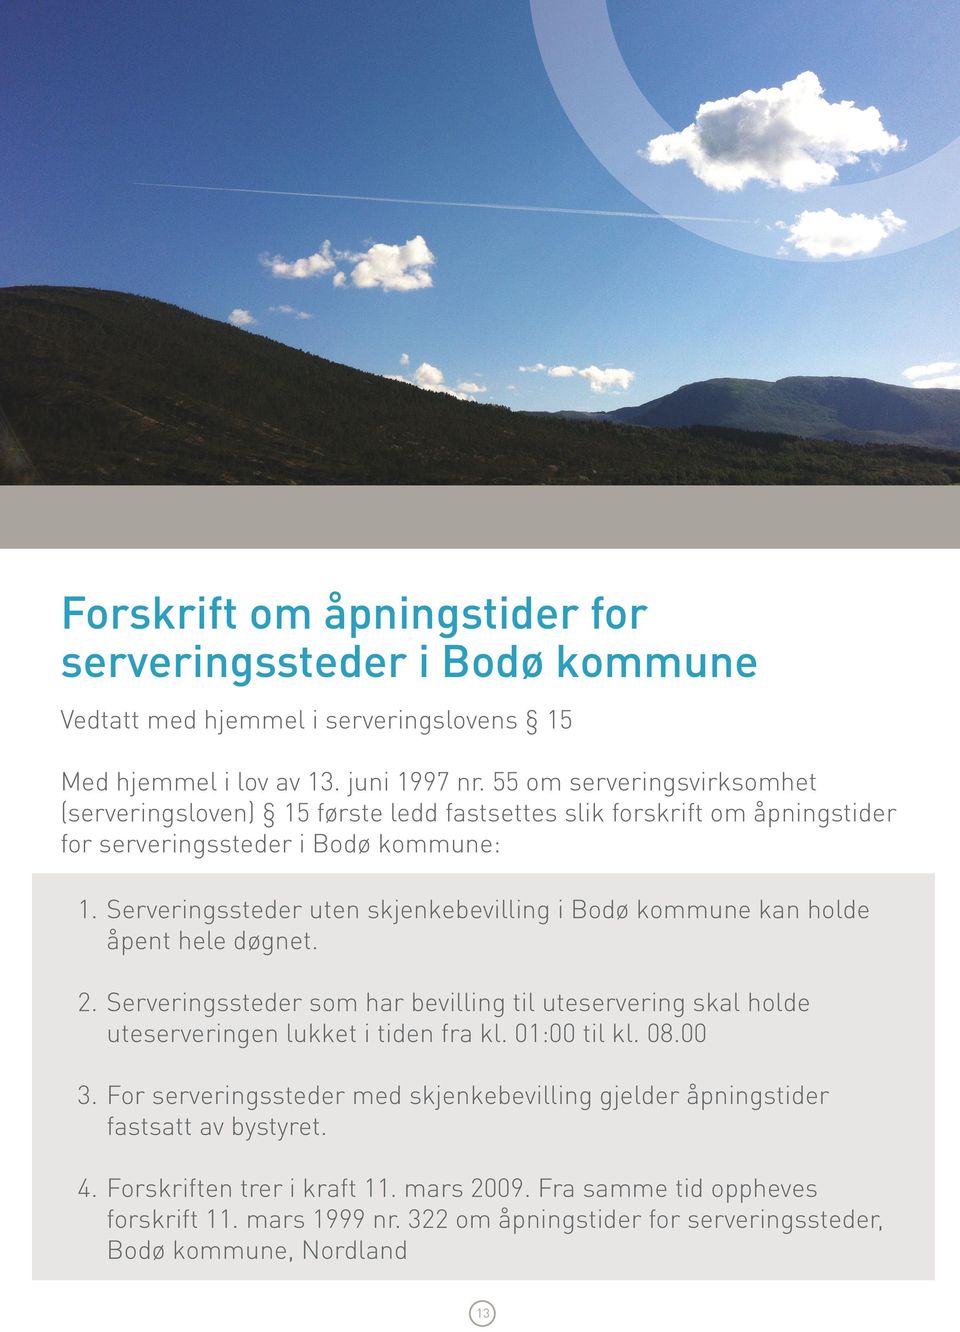 Serveringssteder uten skjenkebevilling i Bodø kommune kan holde åpent hele døgnet. 2. Serveringssteder som har bevilling til uteservering skal holde uteserveringen lukket i tiden fra kl.